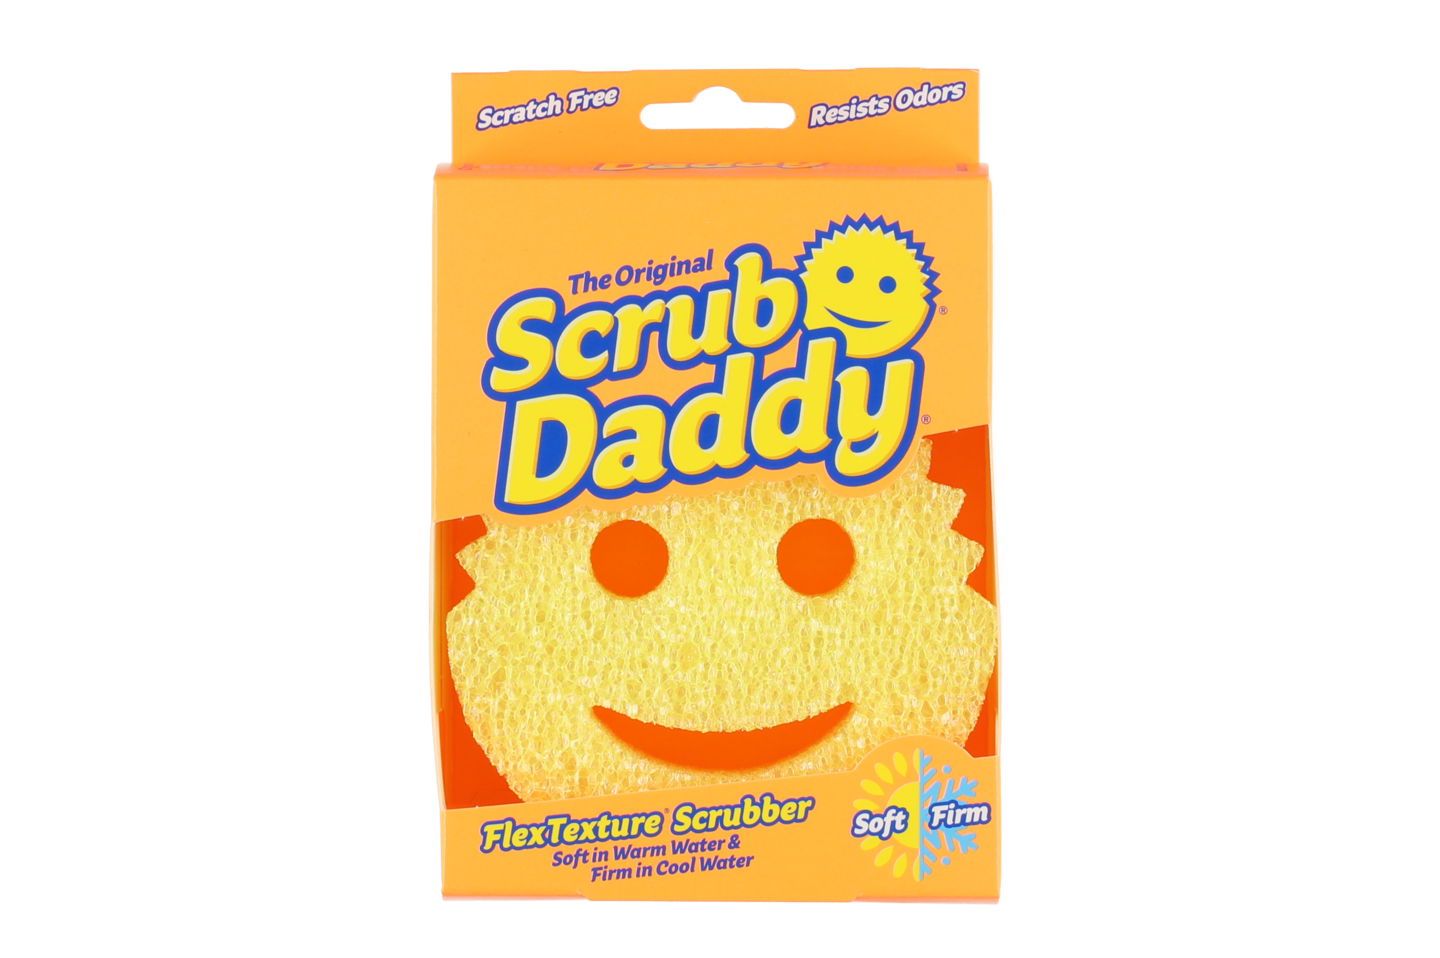 Puhdistussieni Scrub Daddy